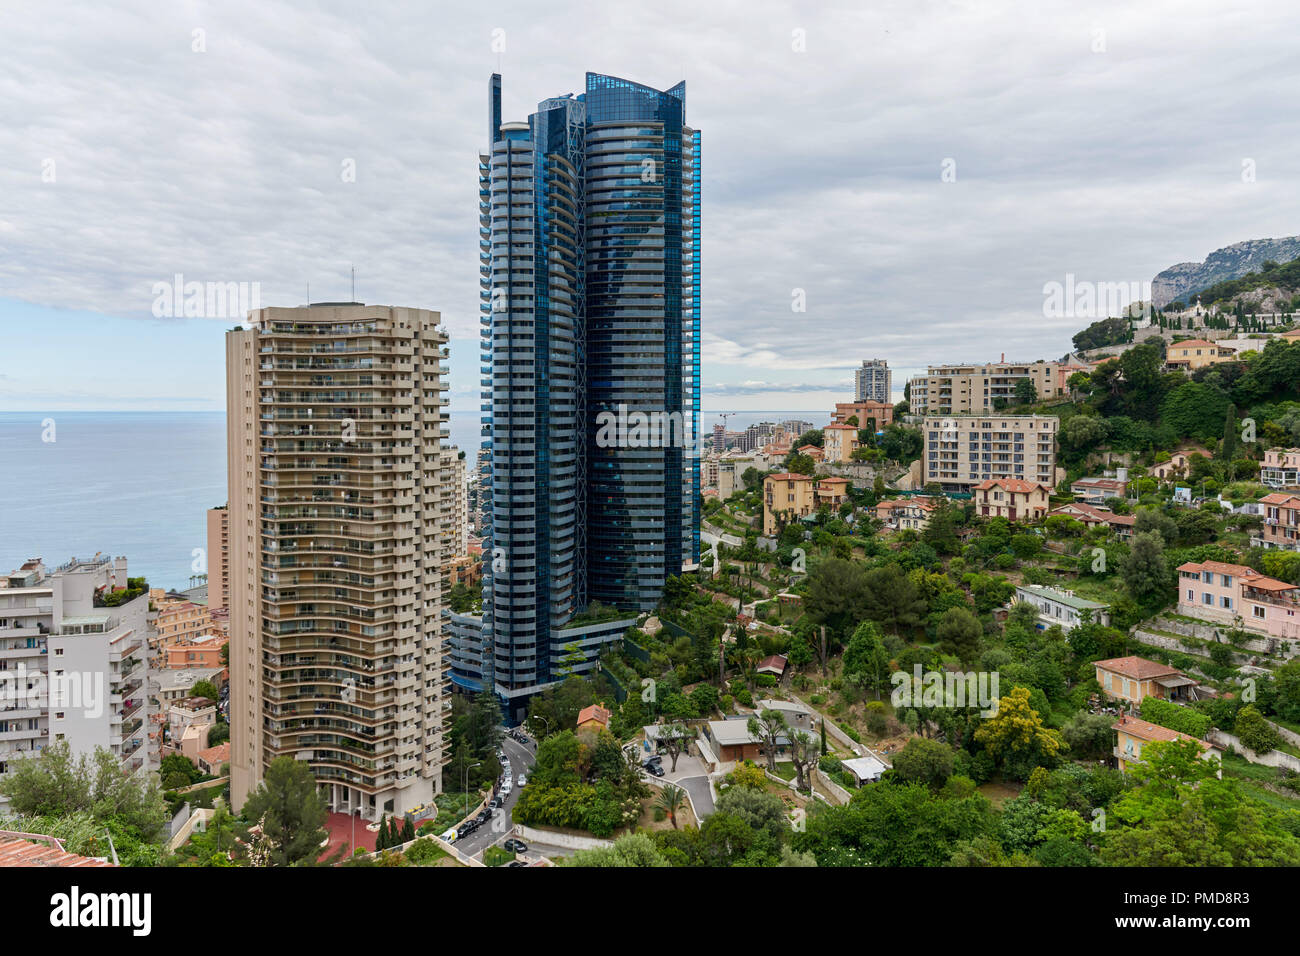 Monaco : la Tour Odéon, un double-gratte-ciel conçu par l'architecte monégasque Alexandre Giraldi. La tour Odéon dans le quartier de 'l'Annonciade' abo Banque D'Images